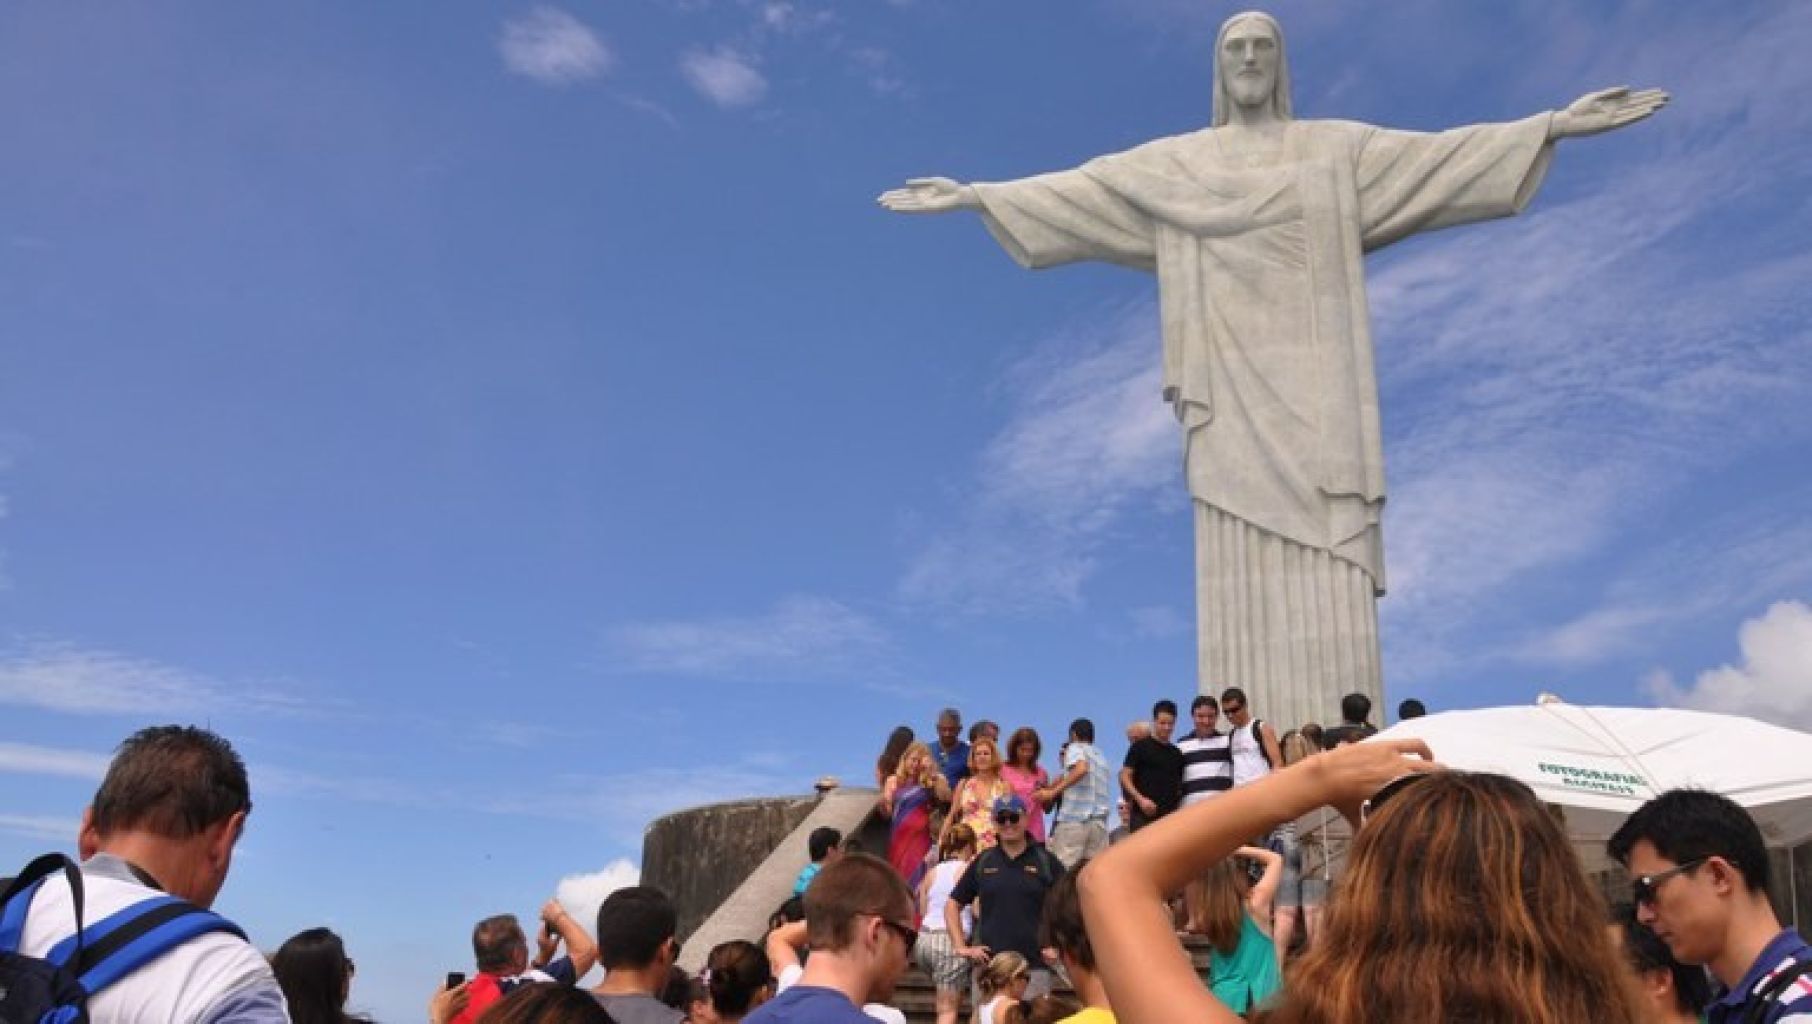 Turismo será responsável por quase 8 milhões de empregos e 7,8% do PIB do Brasil em 2023, afirma WTTC